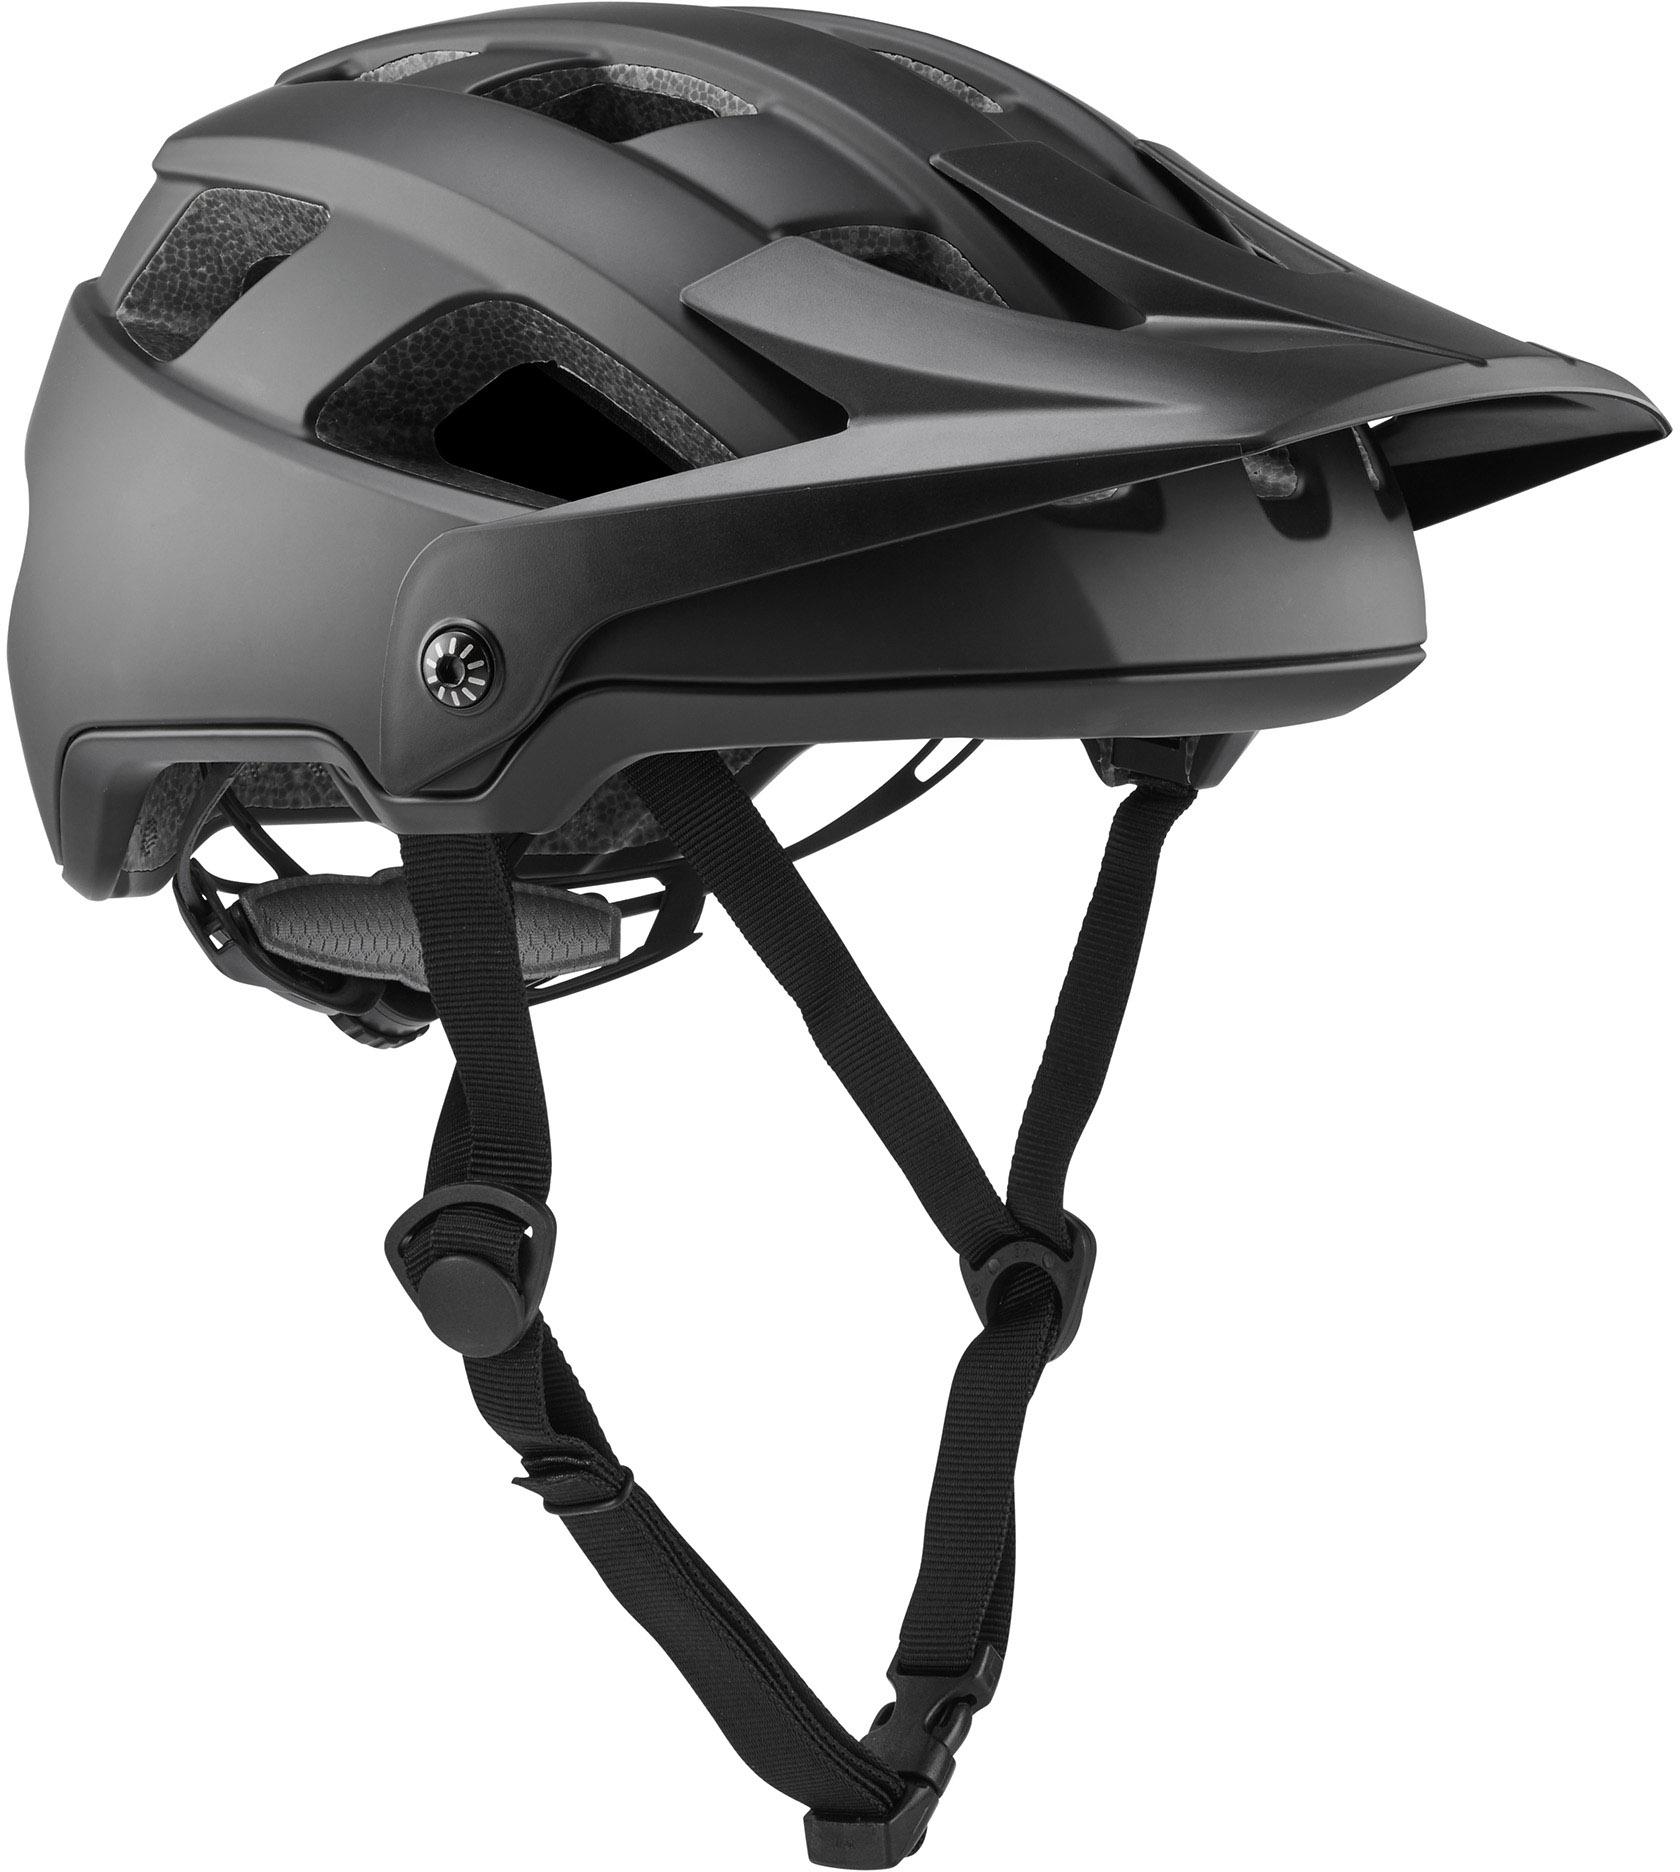 Brand-x Eh1 Enduro Mtb Cycling Helmet - Black/black